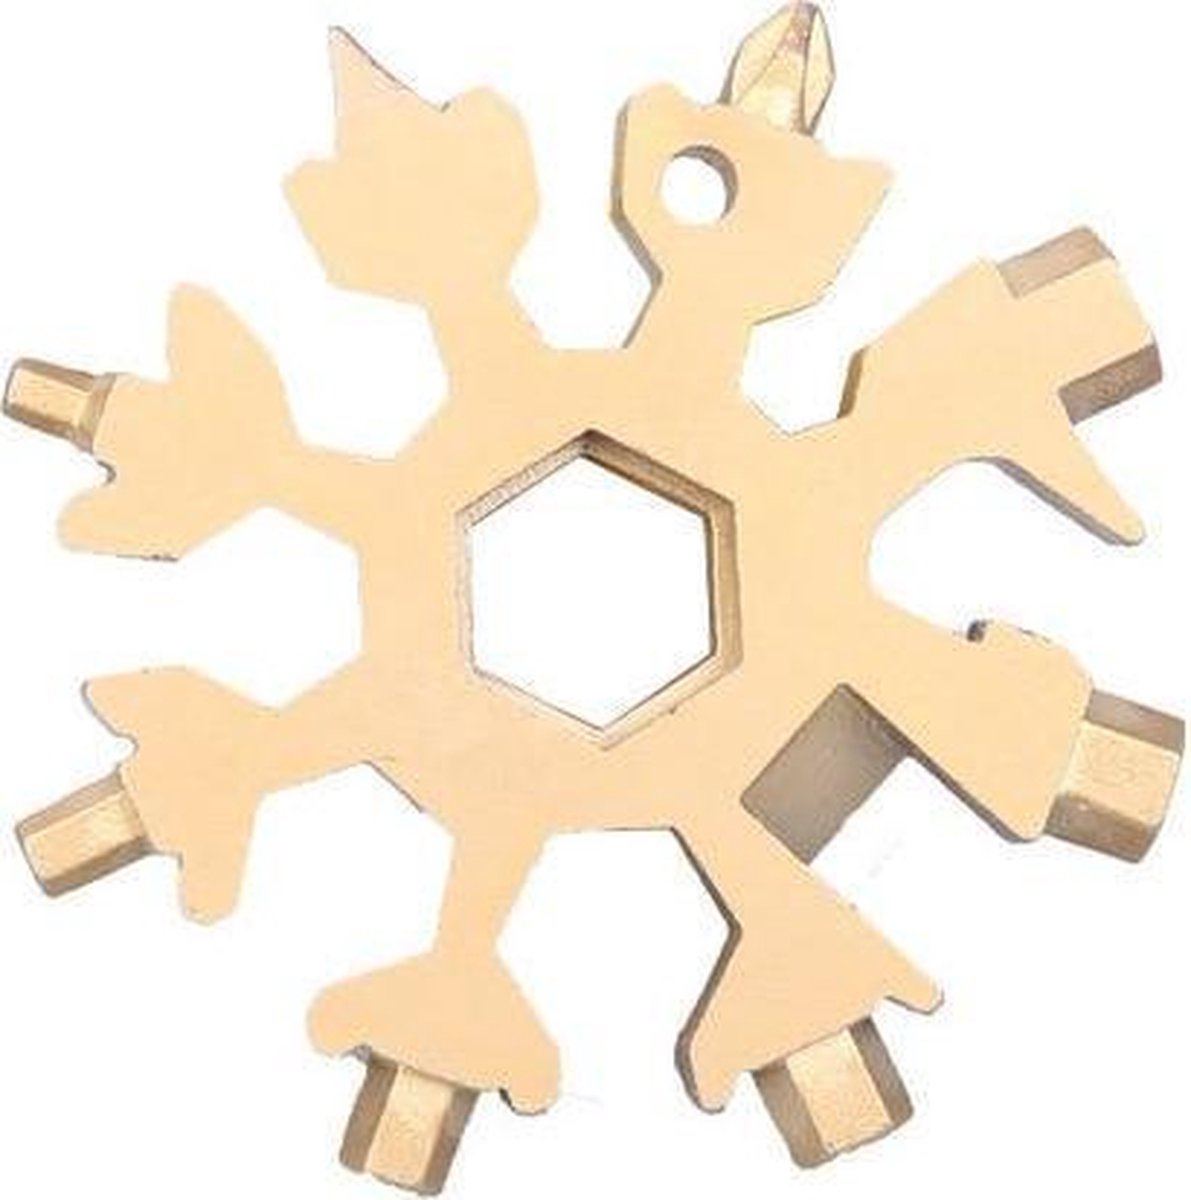 Snowflake Multitool - Goud - RVS - Sneeuwvlok Multitool - Cadeau - Sleutelhanger - Gereedschap - 18-in-1 multi-tool - Ringsleutel